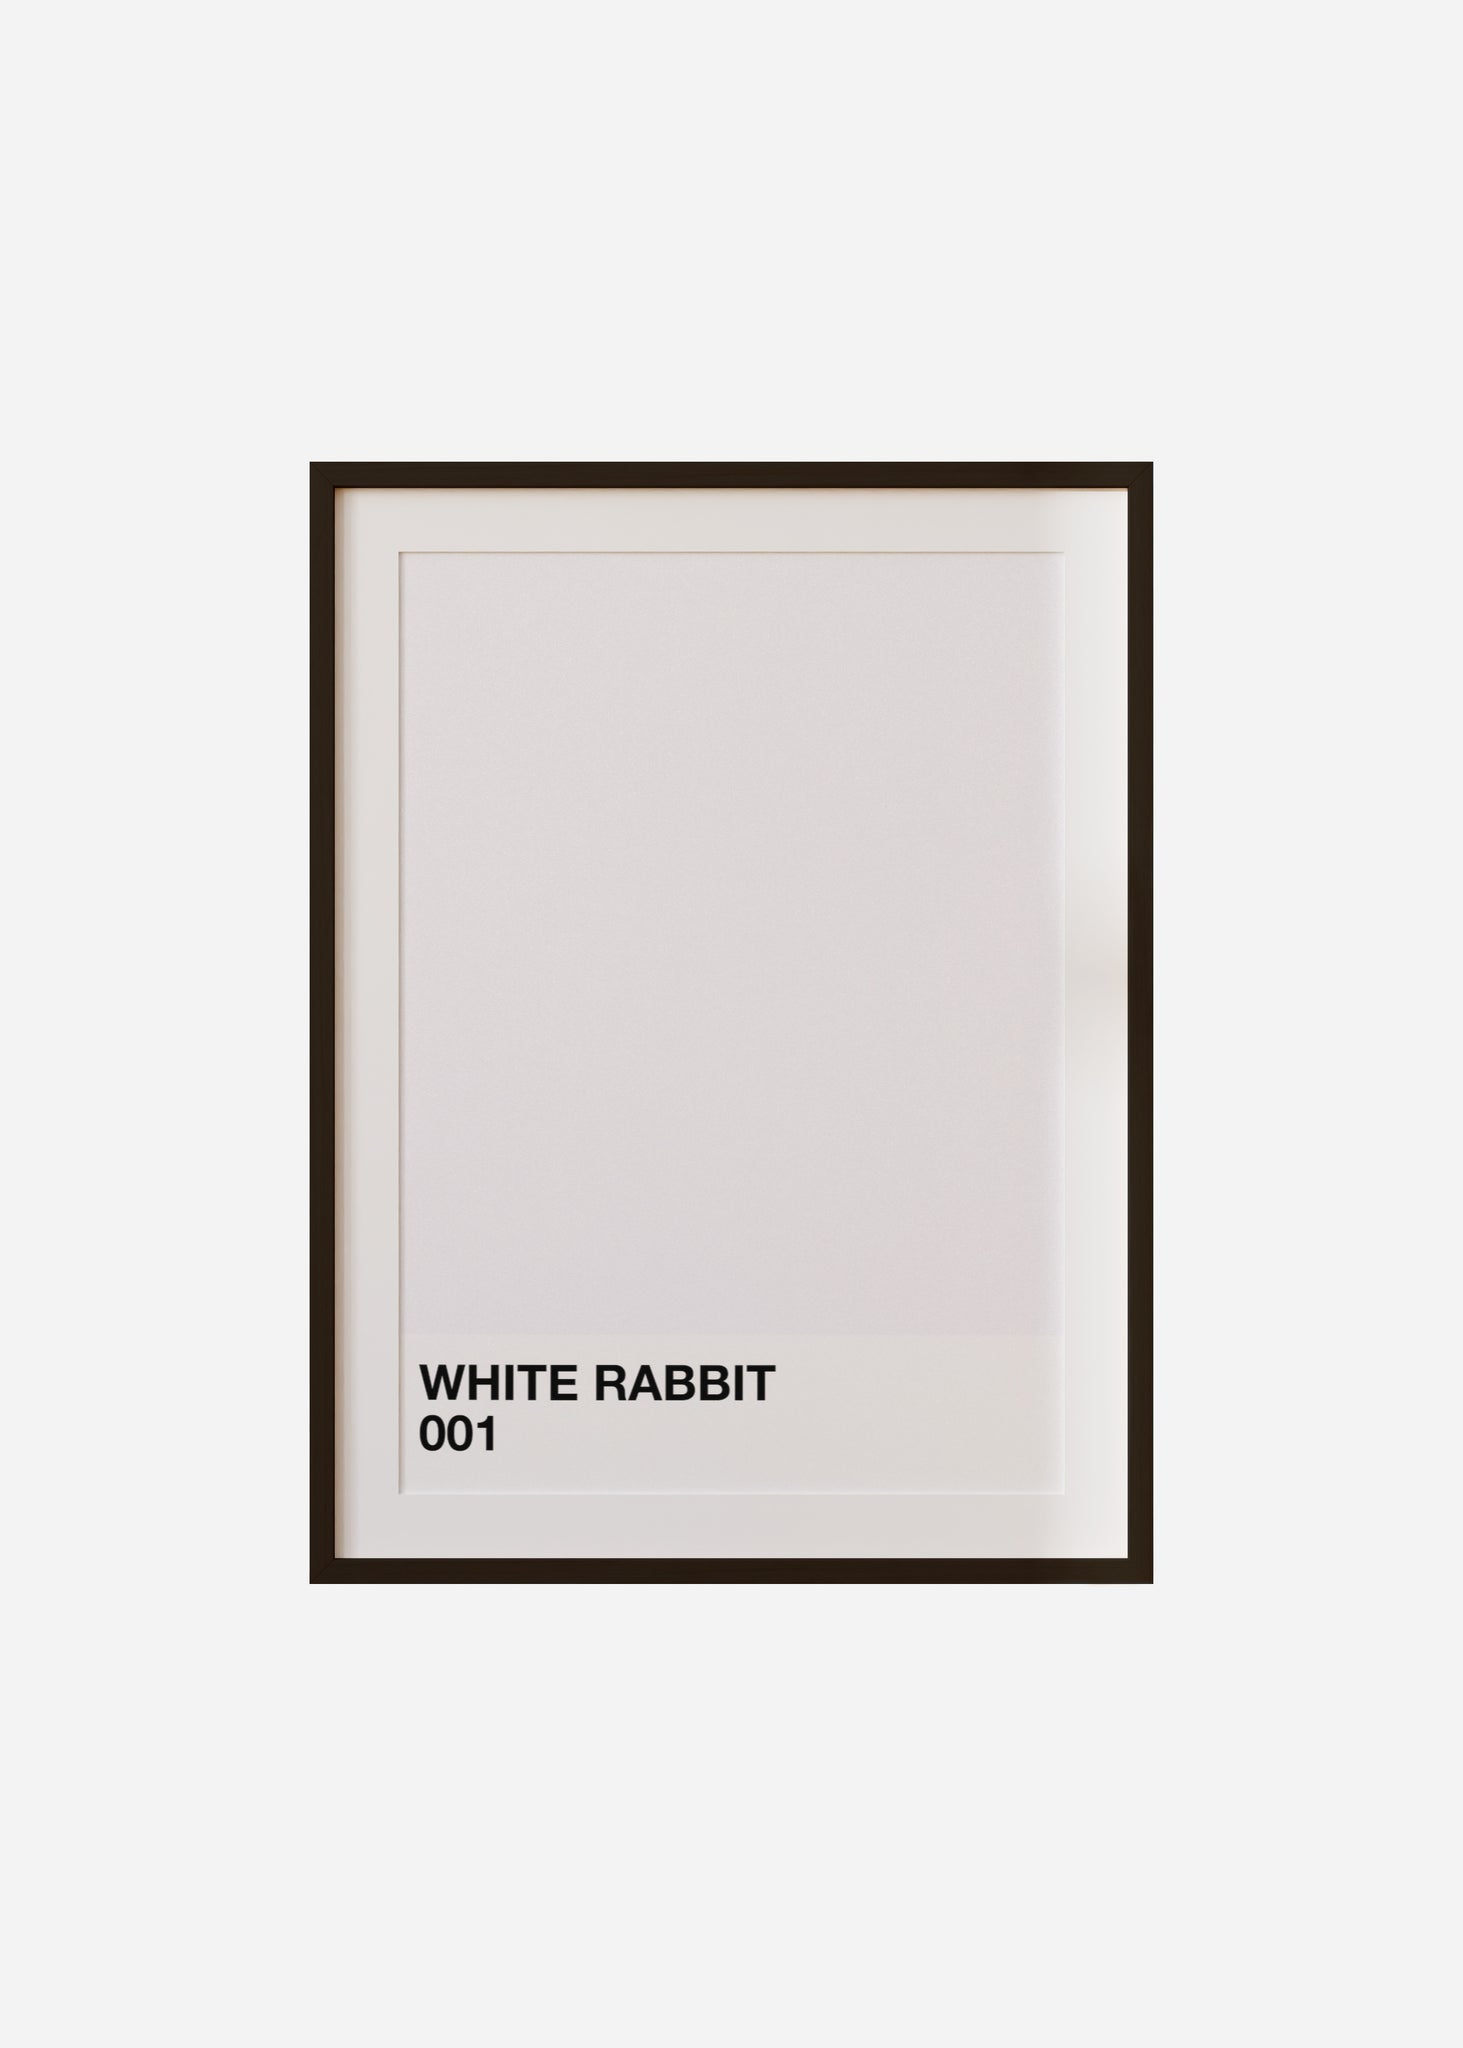 white rabbit Framed & Mounted Print